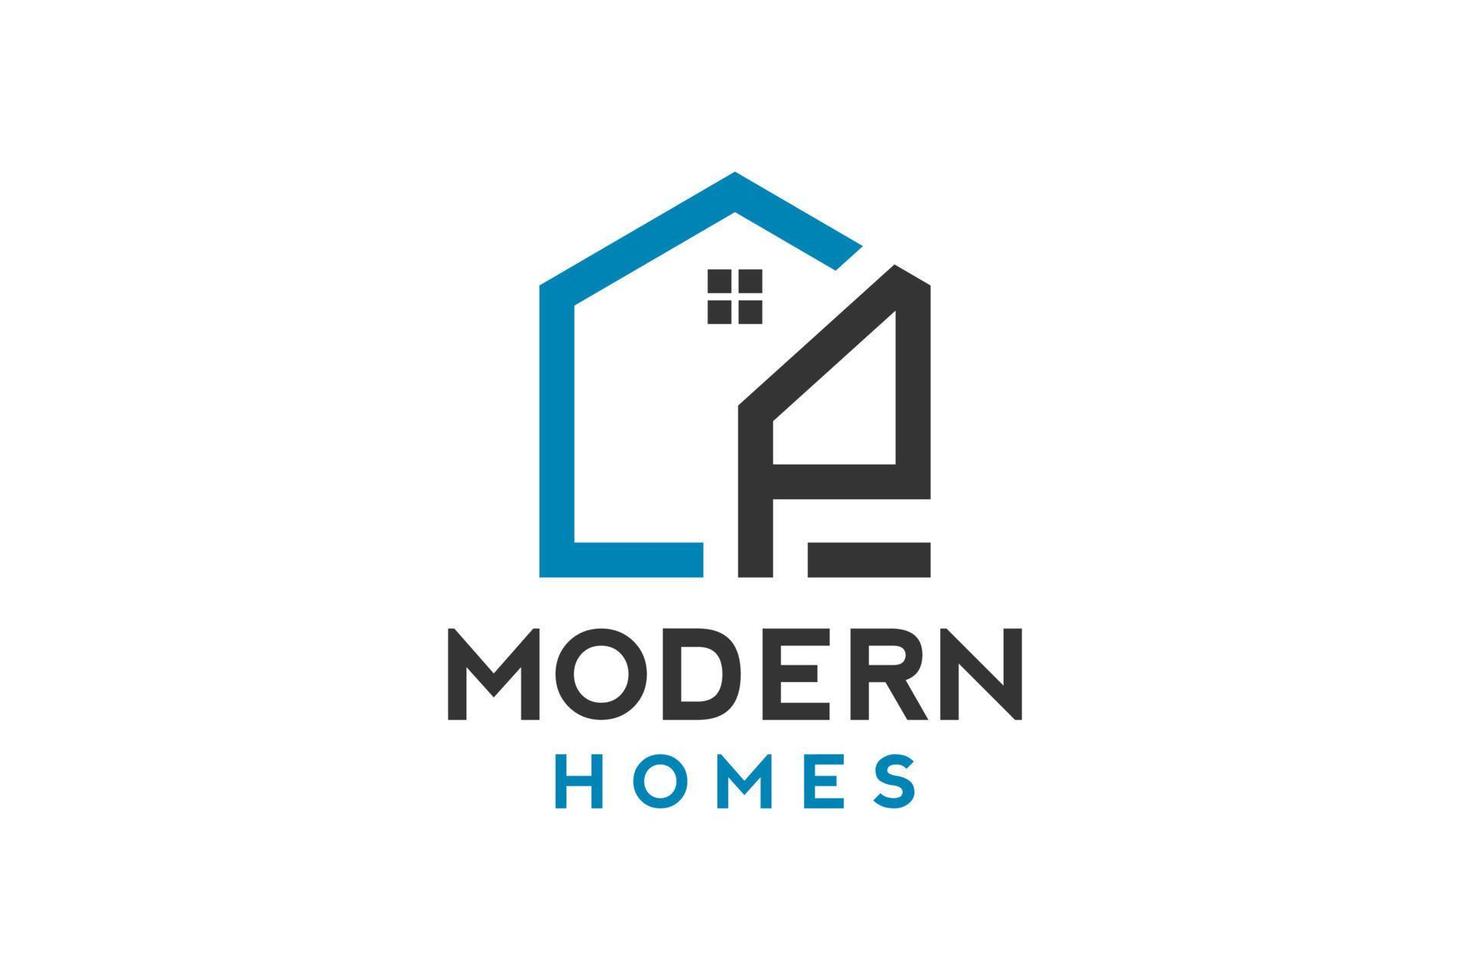 création de logo de p en vecteur pour la construction, la maison, l'immobilier, le bâtiment, la propriété. modèle de conception de logo professionnel à la mode génial minimal.